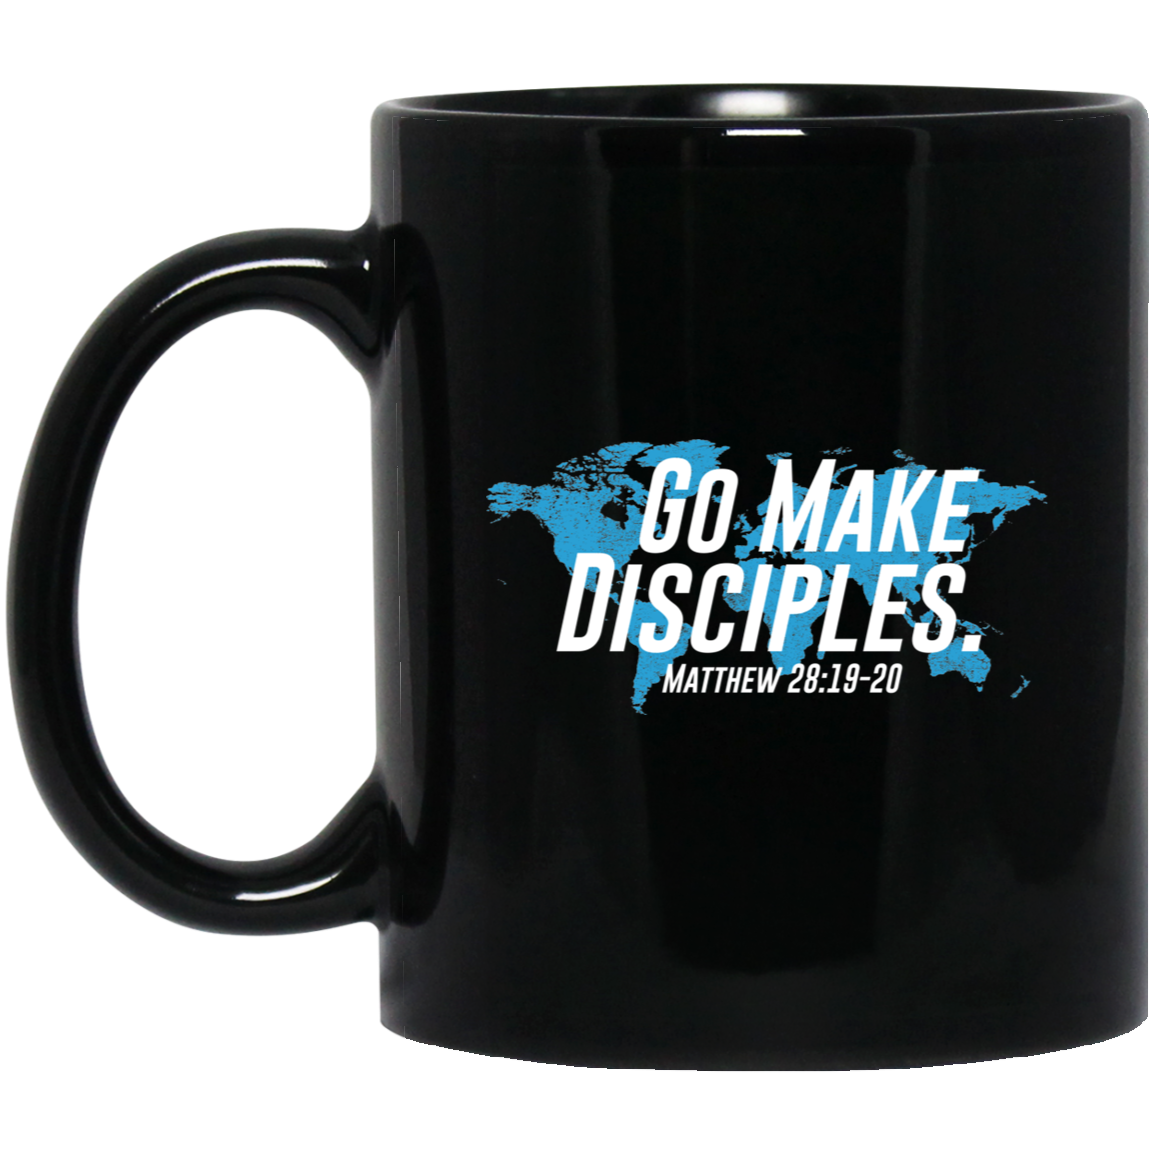 Make Disciples - 11oz Black Coffee Mug